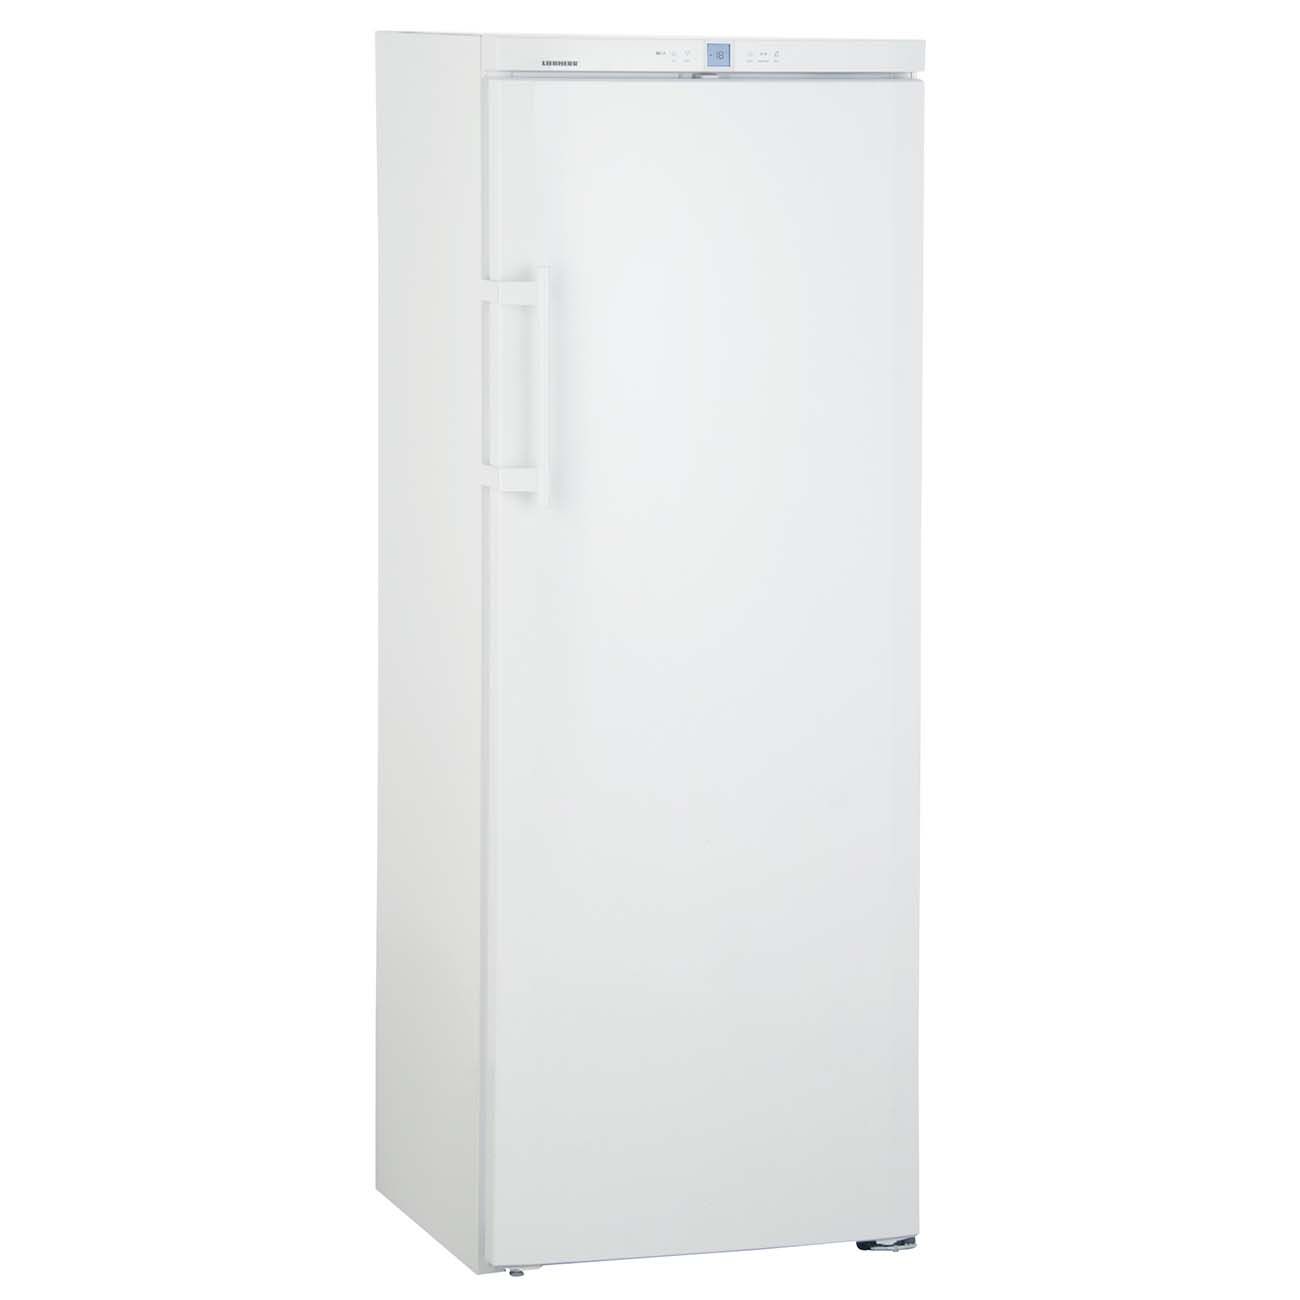 Индезит однокамерный. Холодильник Stinol STD 167. Холодильник Stinol STD 167 белый однокамерный. Холодильник с морозильником Stinol STD 167 белый.